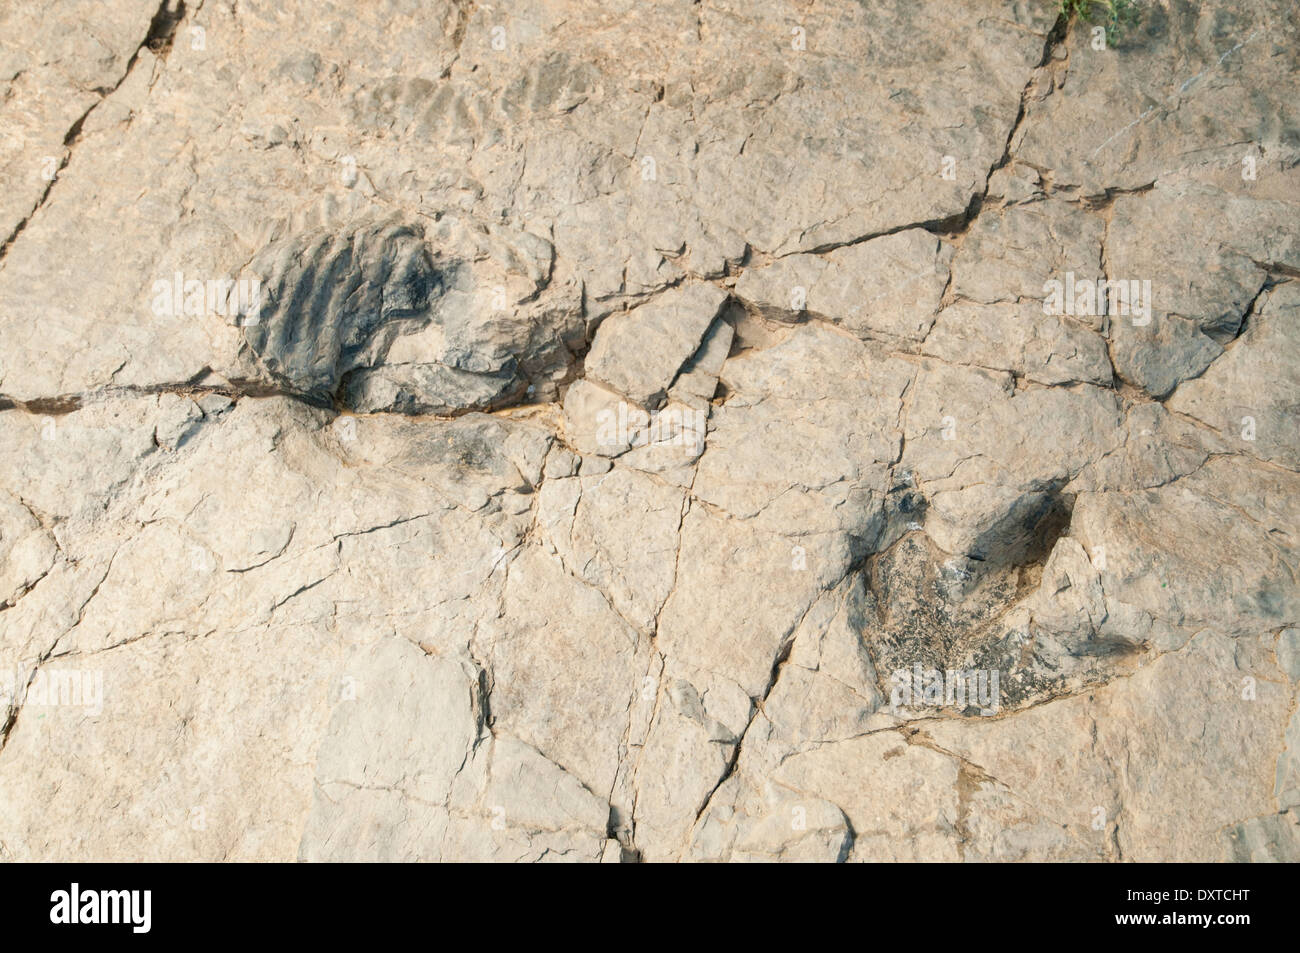 Tracce di impronte di dinosauro (o ichniti) in una roccia piatta, precedentemente il fondo di una laguna interna al sito fossile Cornago, la Rioja, Spagna. Foto Stock